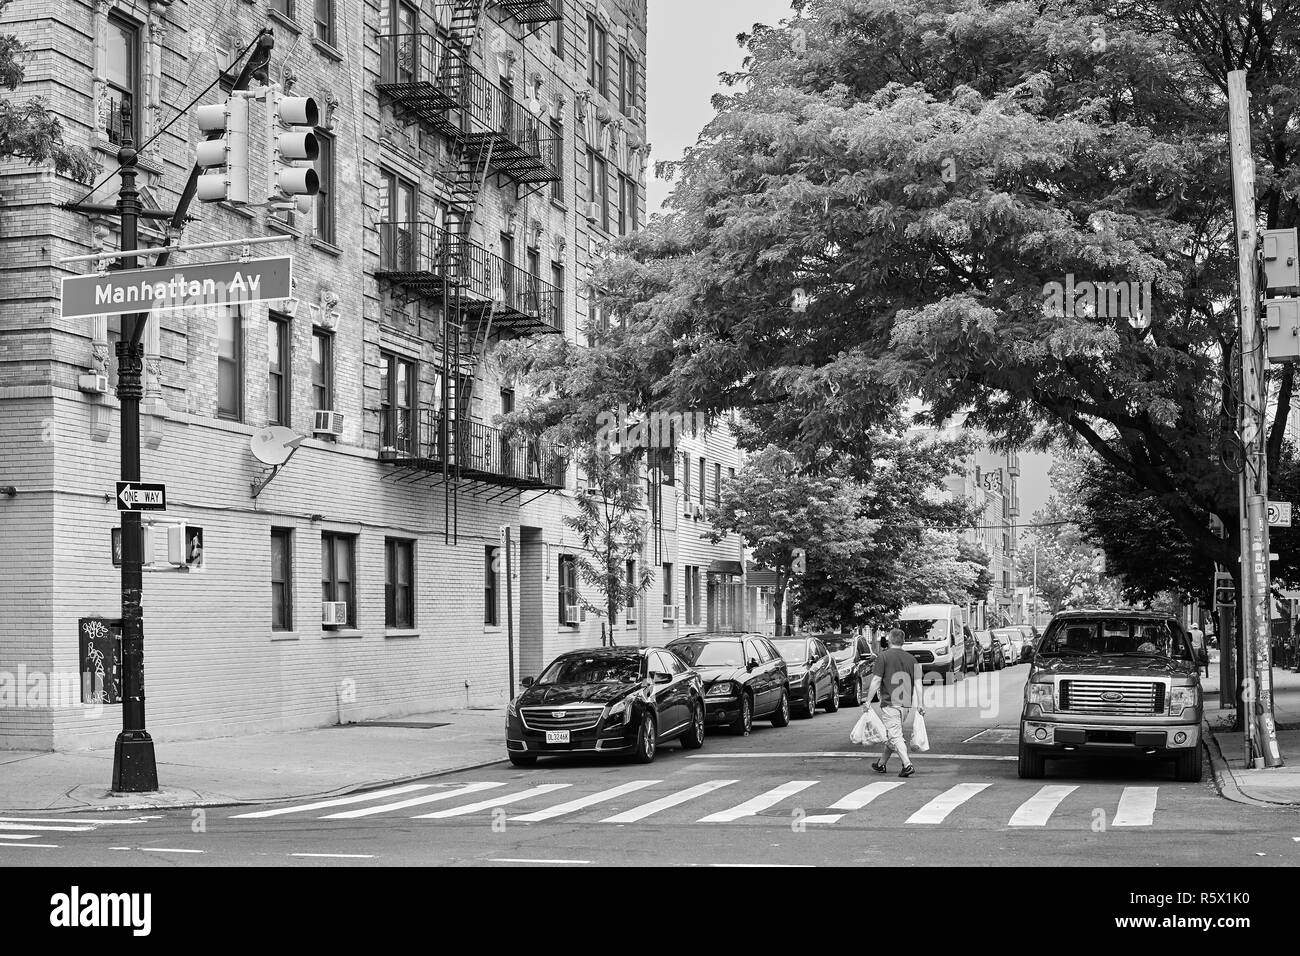 New York, Stati Uniti d'America - Luglio 04, 2018: attraversamento pedonale a Manhattan Avenue. Foto Stock